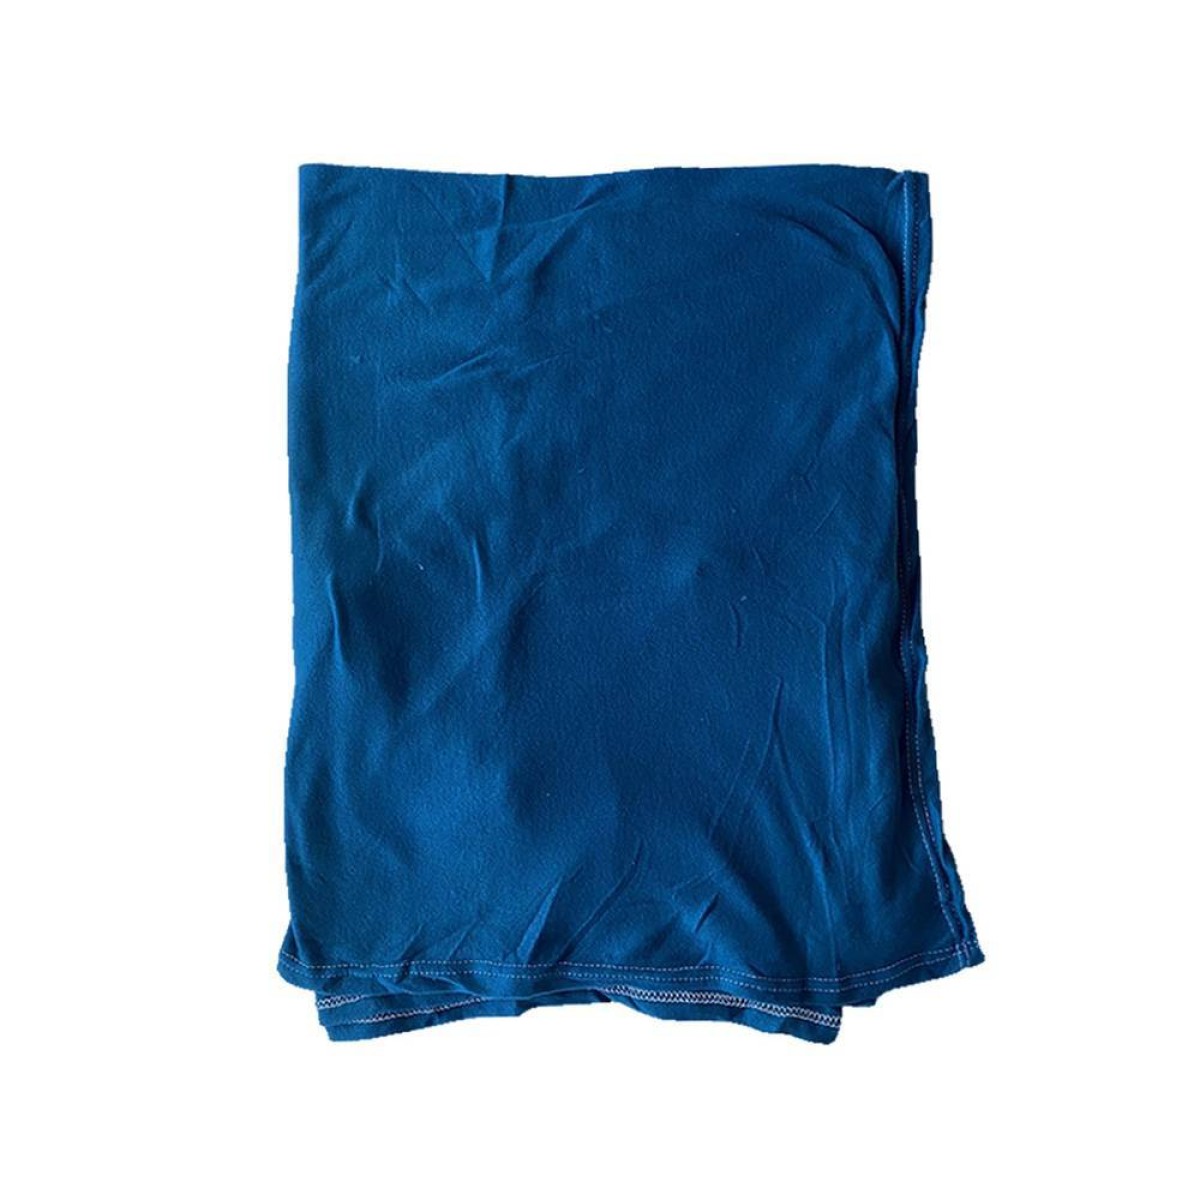 Κουβέρτα - Ριχτάρι Fleece 130x170cm μπλε χρώμα TNS 39-950-2069-1